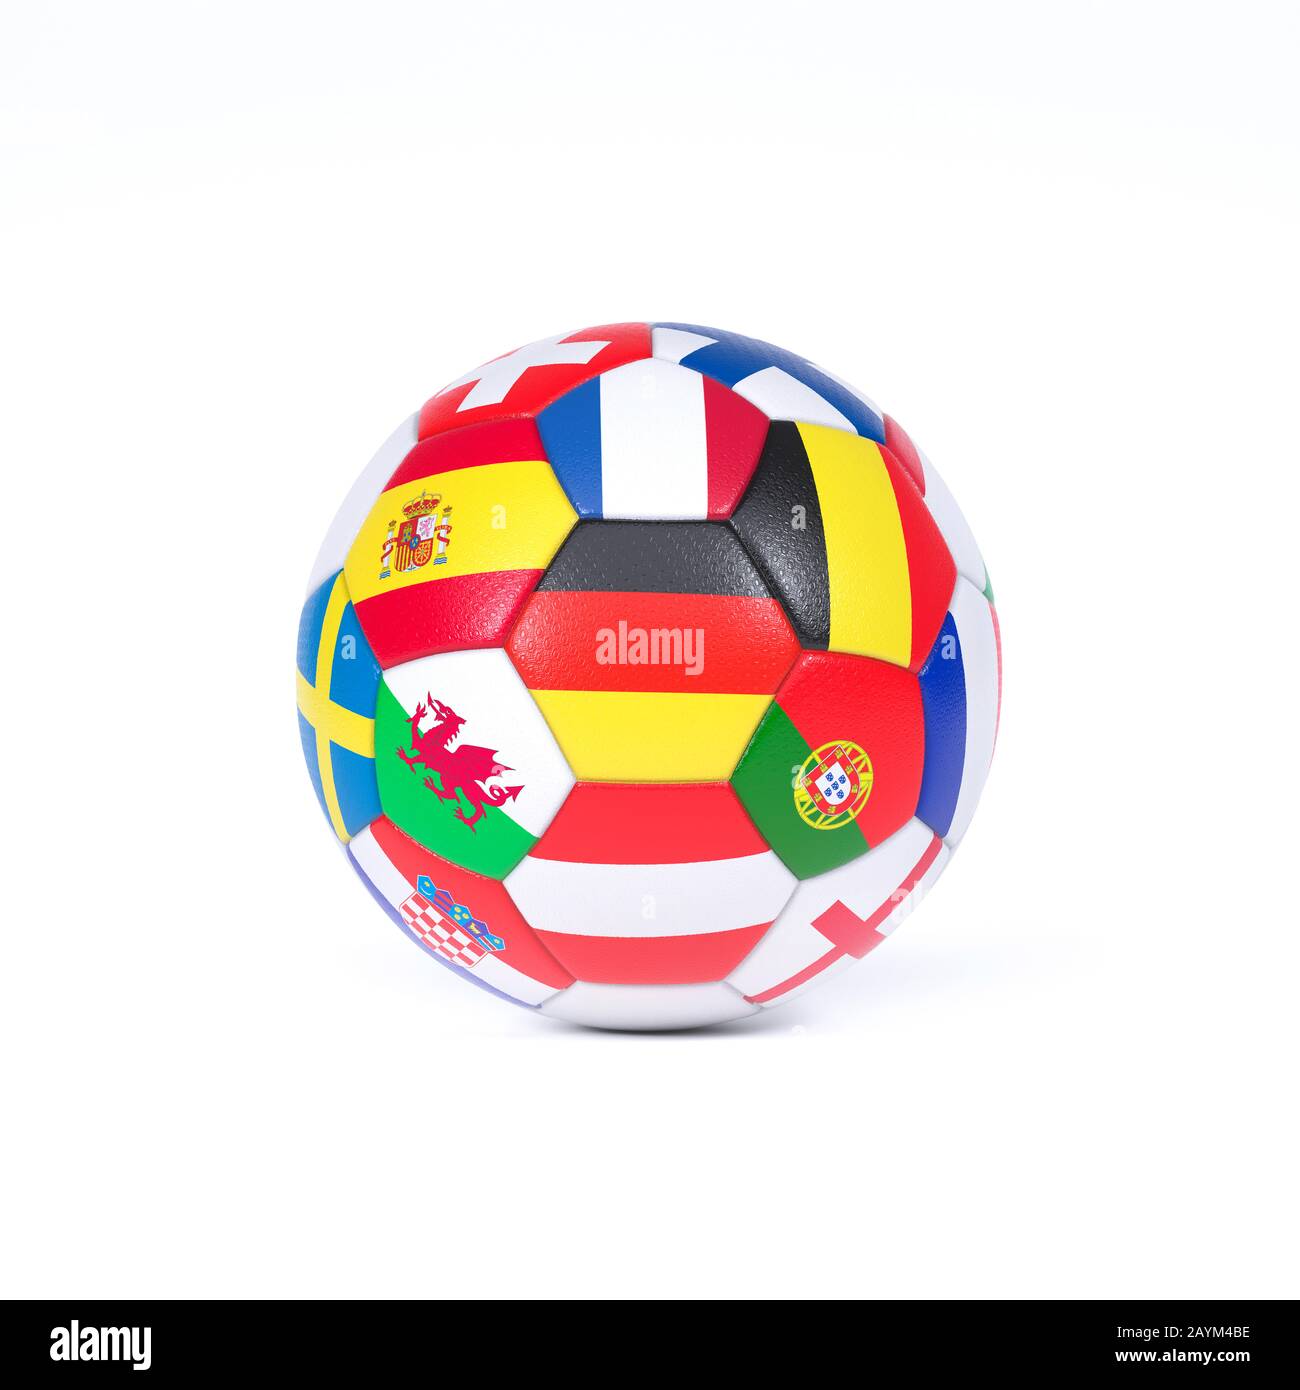 Colorato pallone da calcio o da calcio bianco decorato con le bandiere nazionali dei paesi che competono nei campionati o nella Coppa del mondo Foto Stock